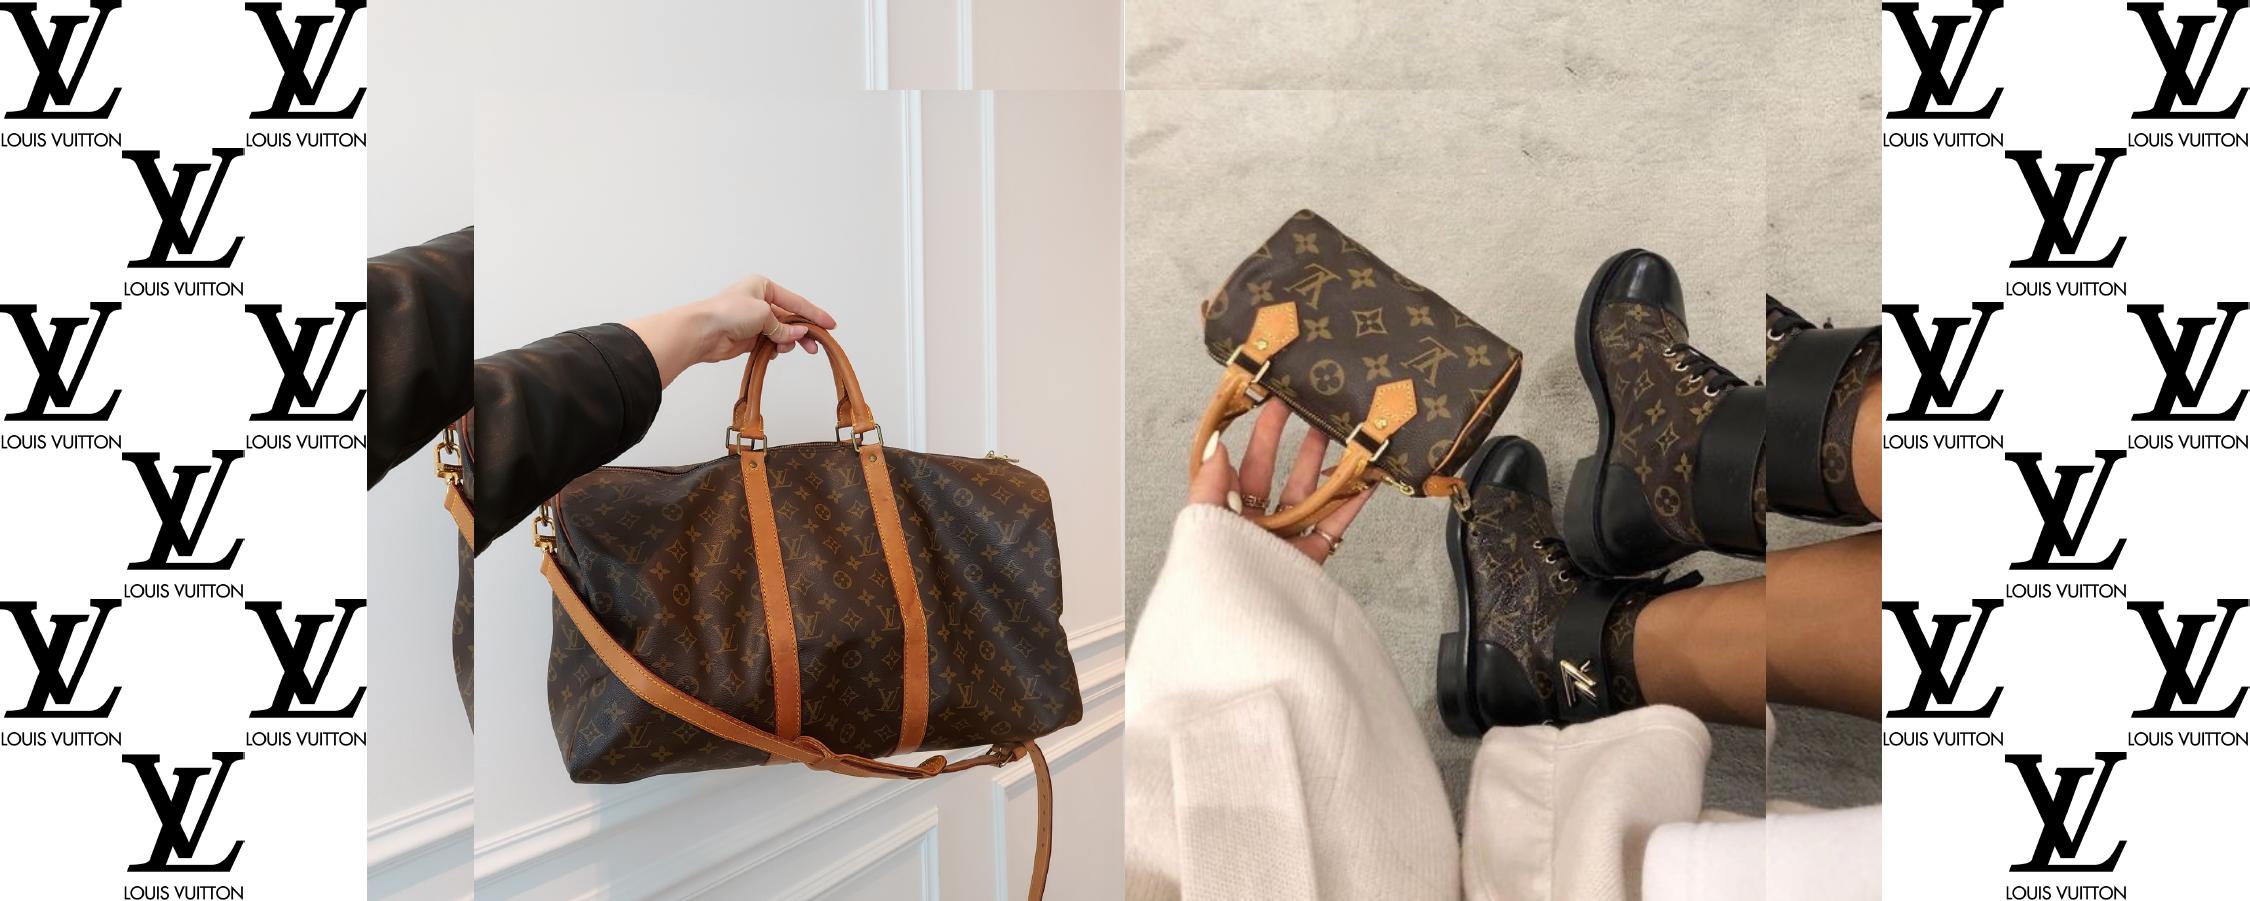 Das kultigste Louis Vuitton Taschen in der Geschichte – l'Étoile